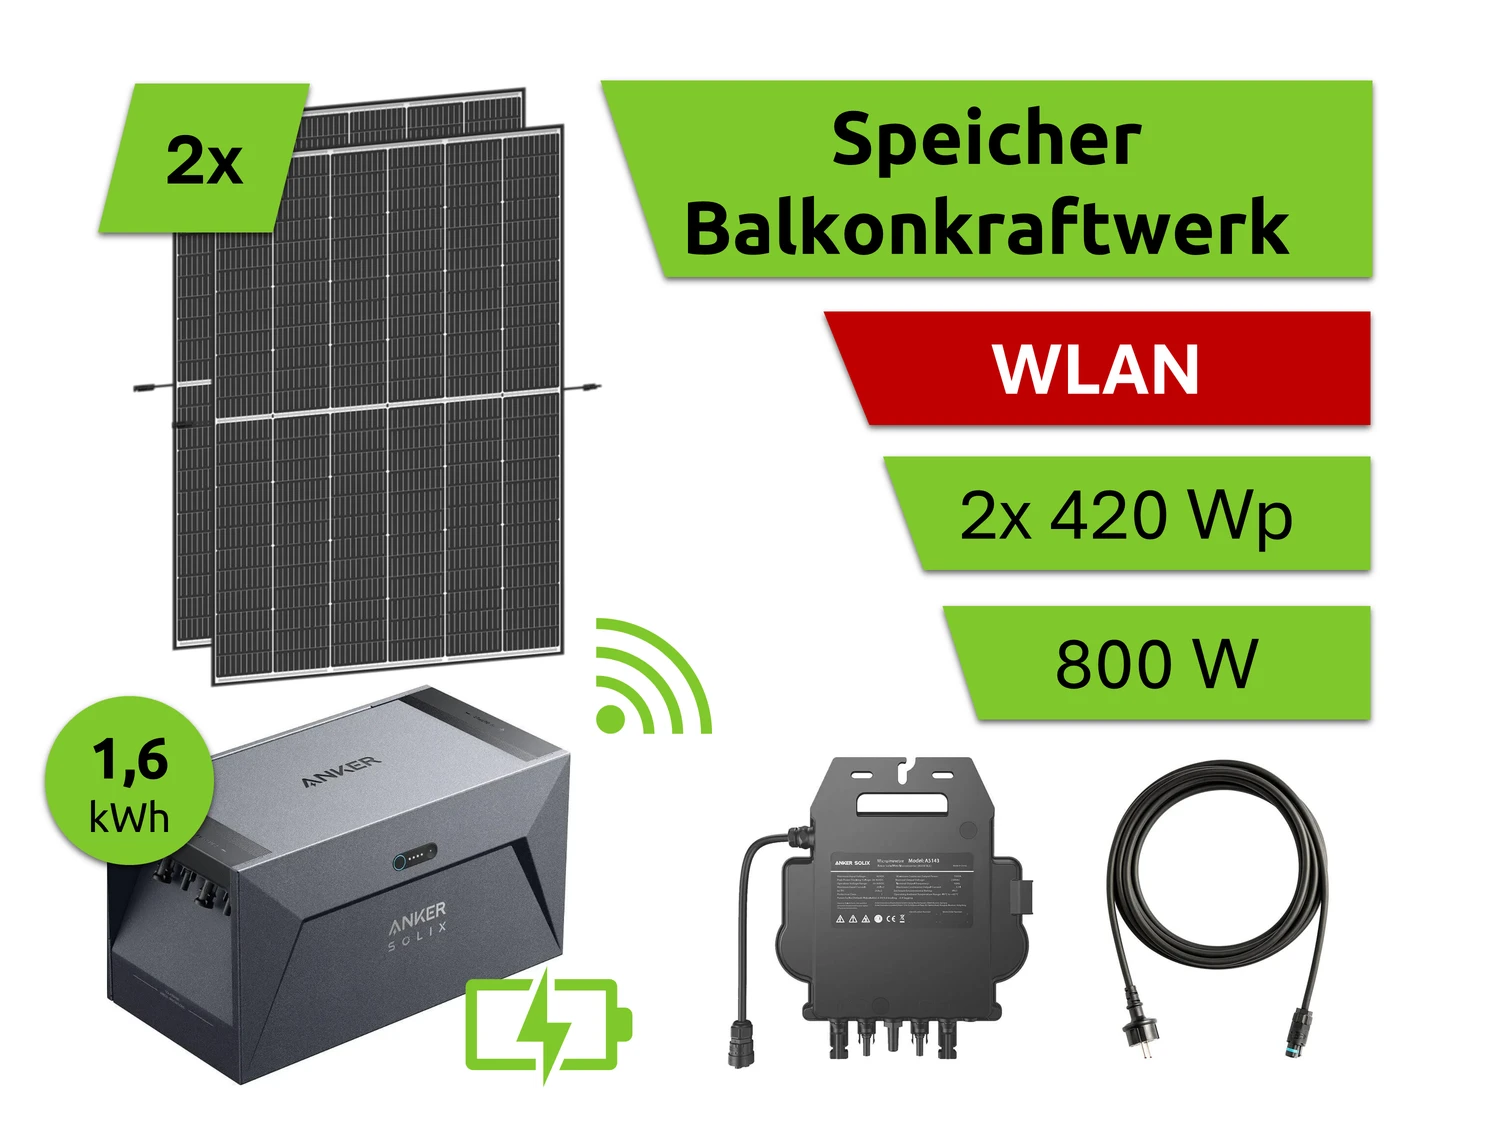 Speicher Balkonkraftwerk 1,6 kWh Set